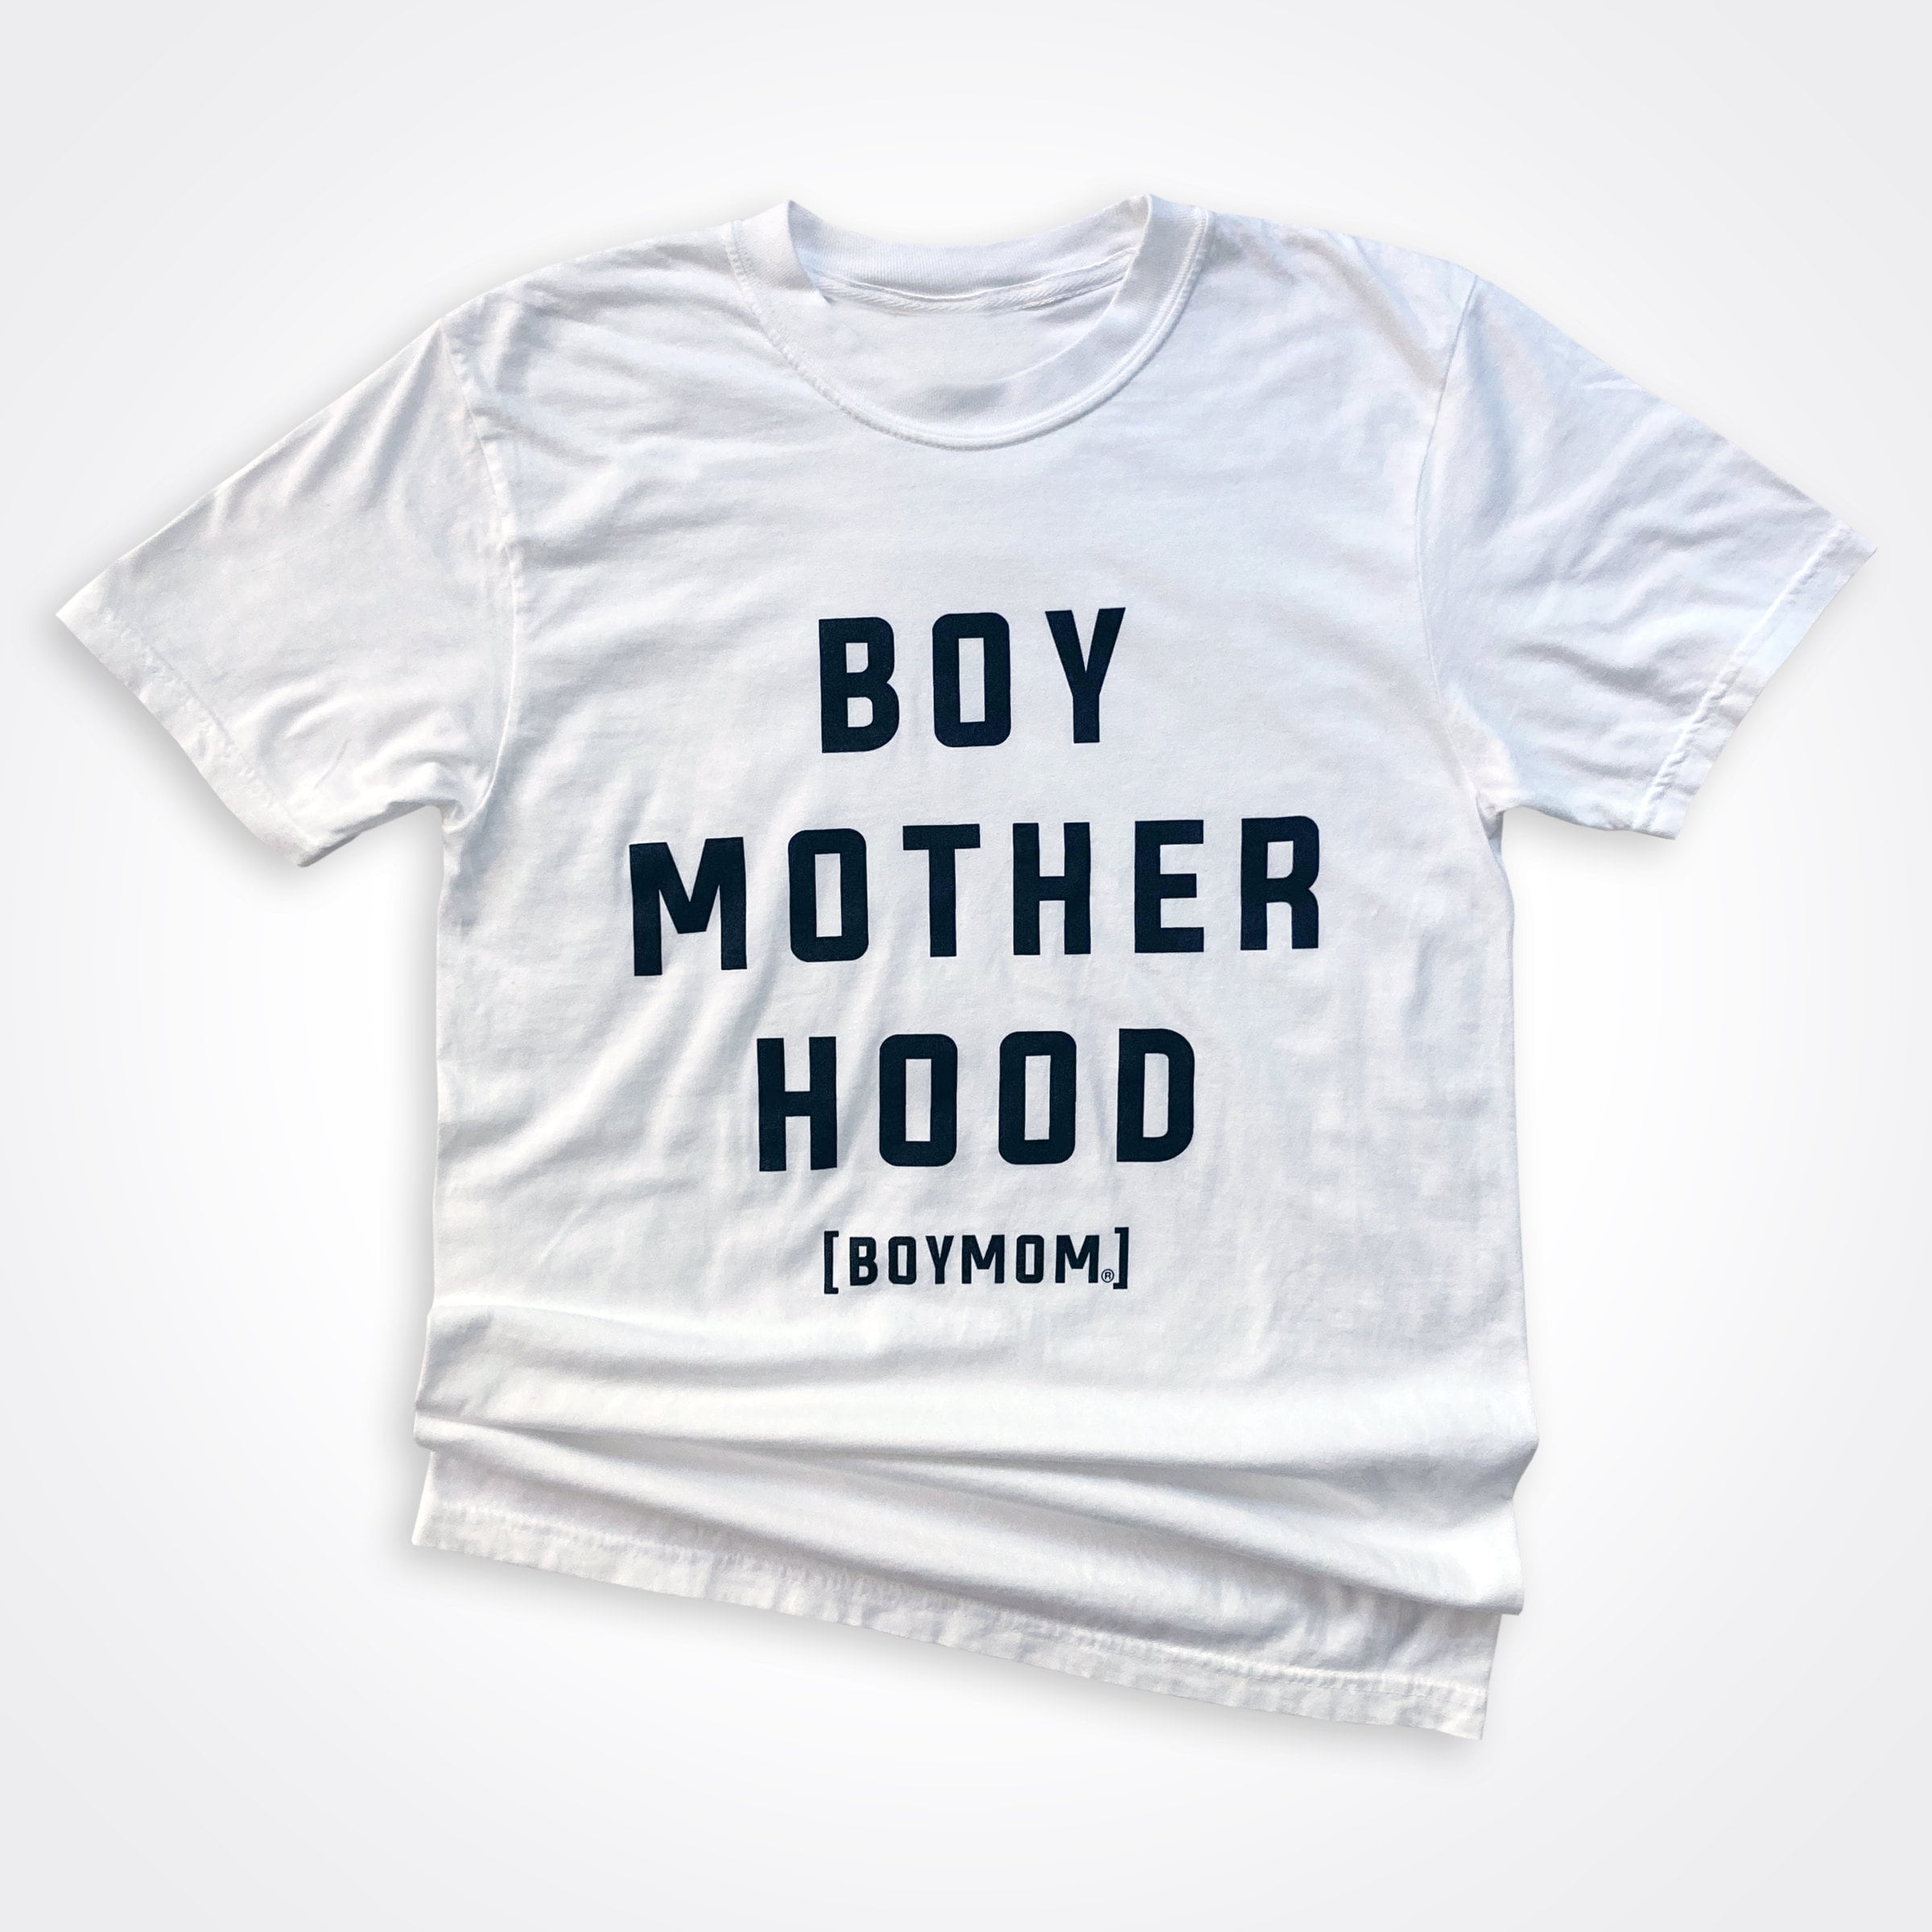 Boymom® Boy Mother Hood